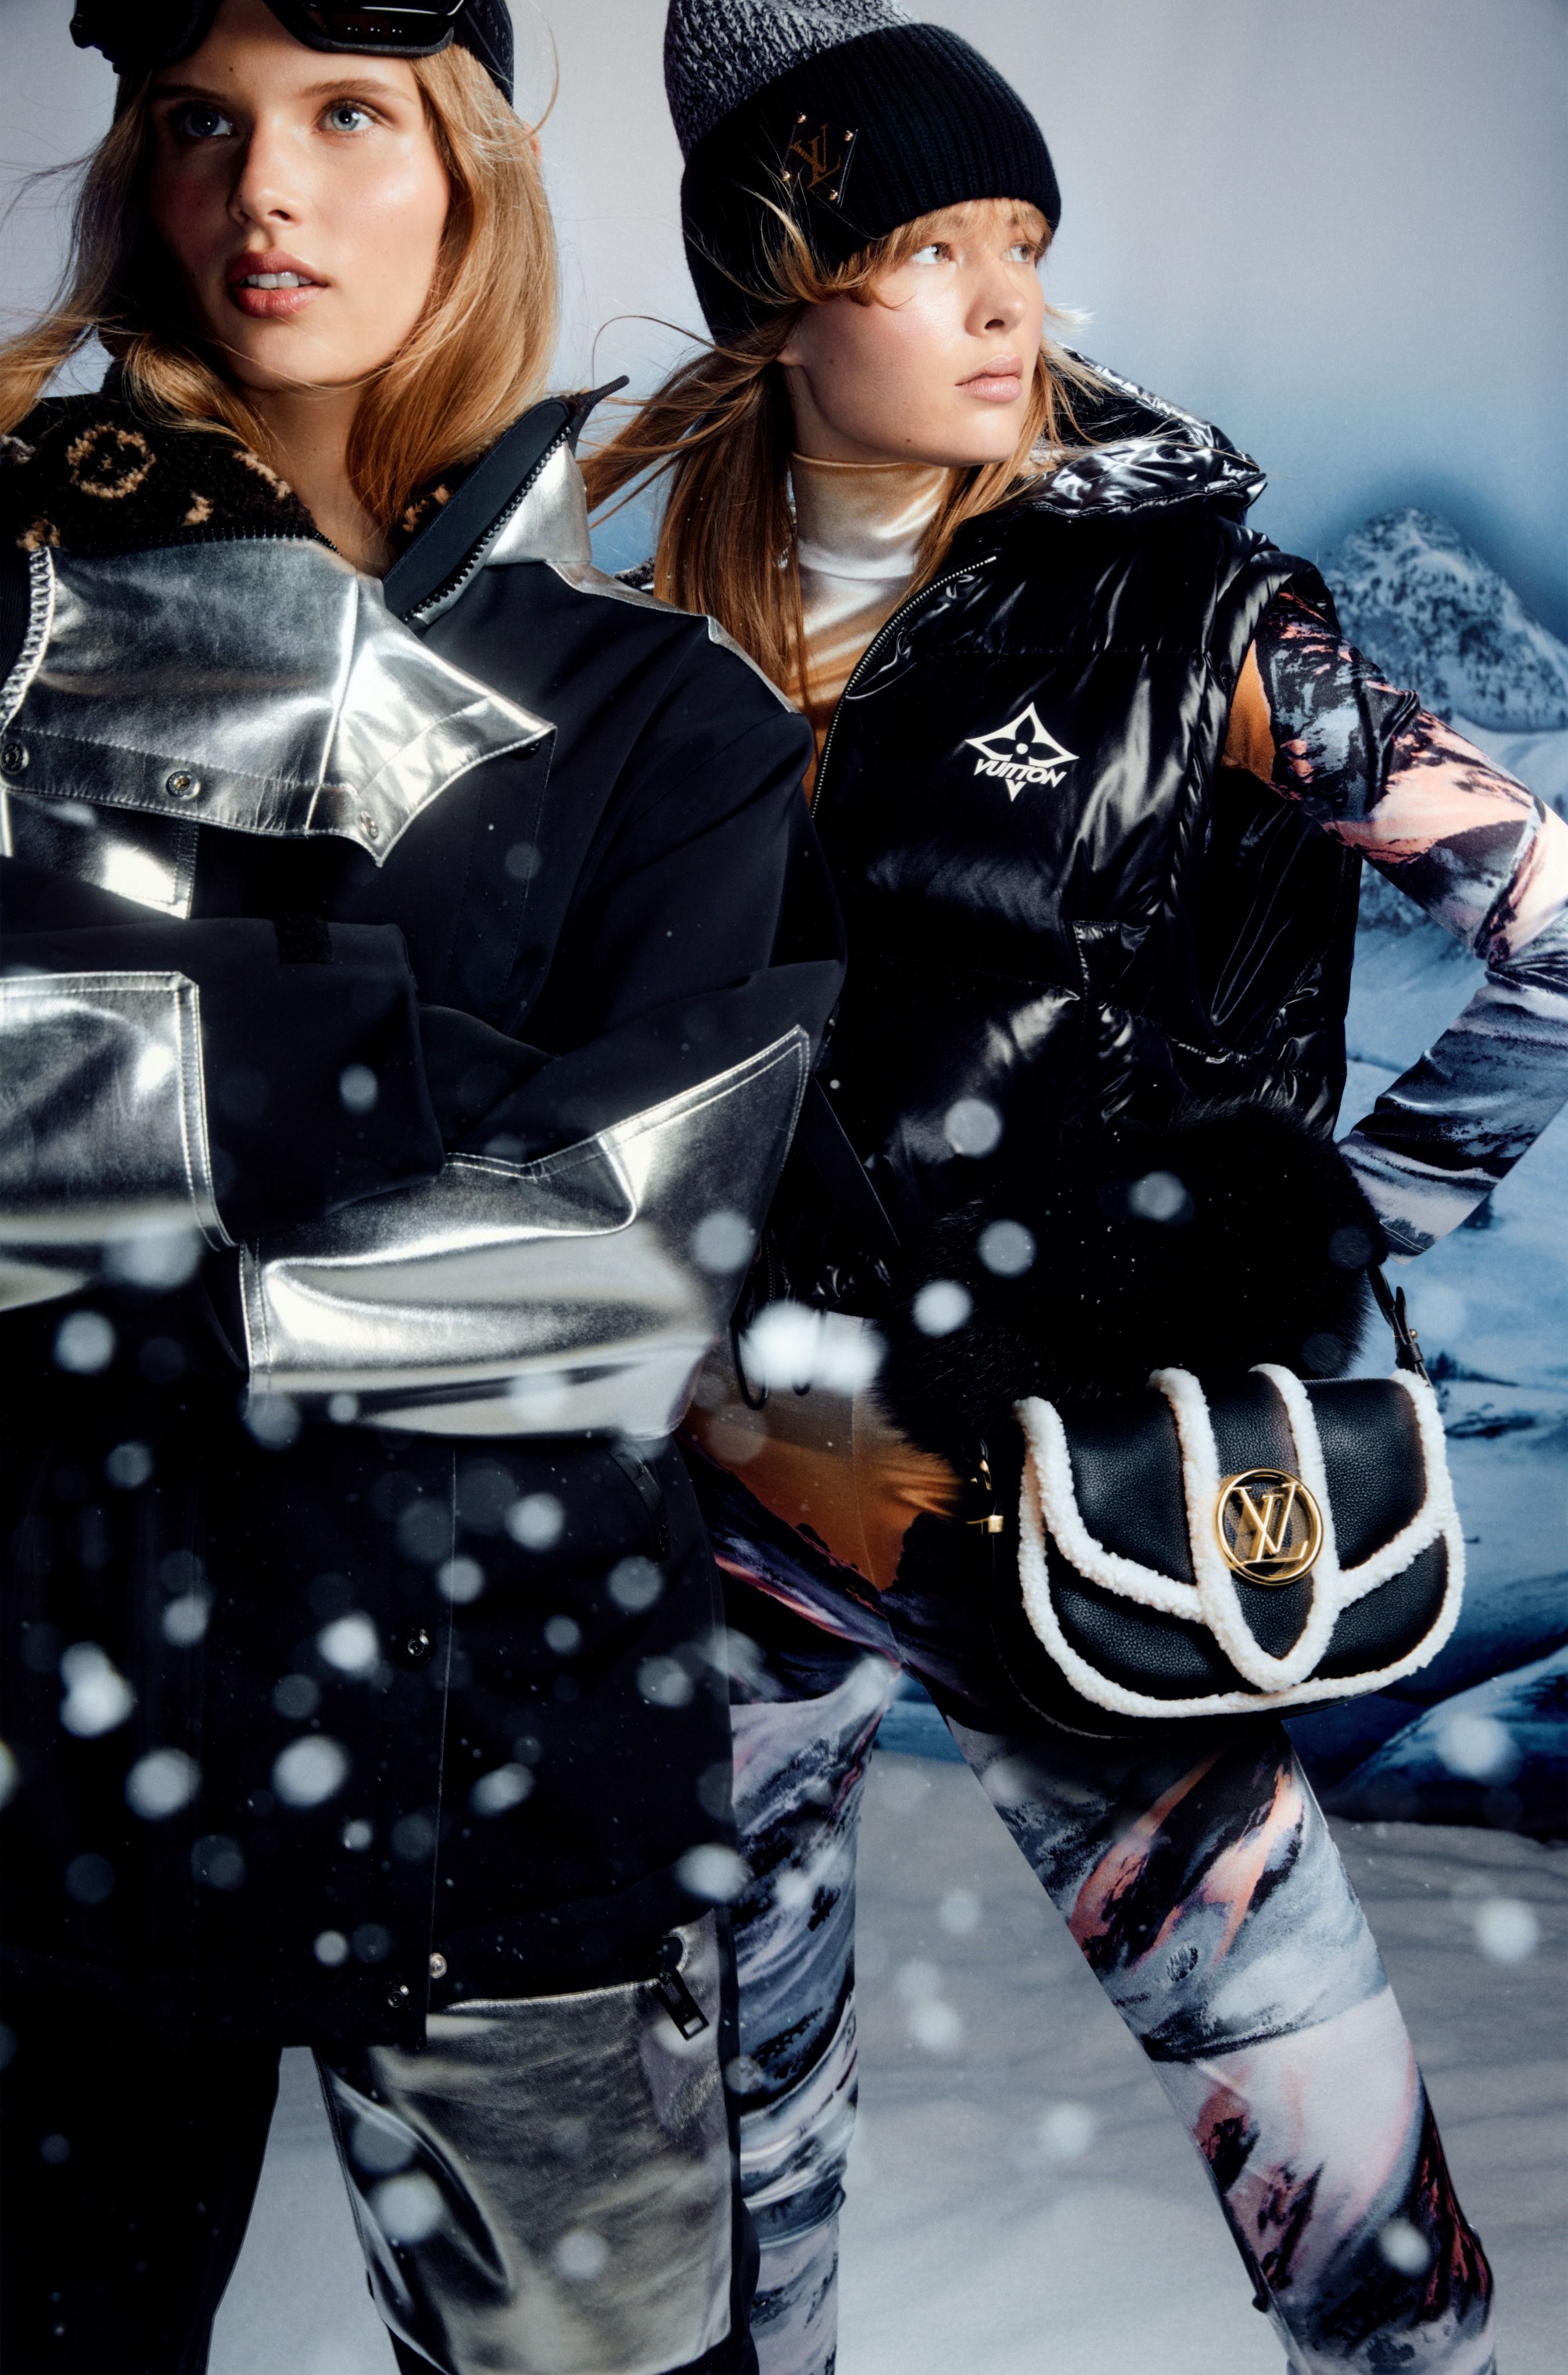 Louis Vuitton lança óculos protetores para esqui celebrando a temporada de  neve - Blog Ana Cláudia Thorpe